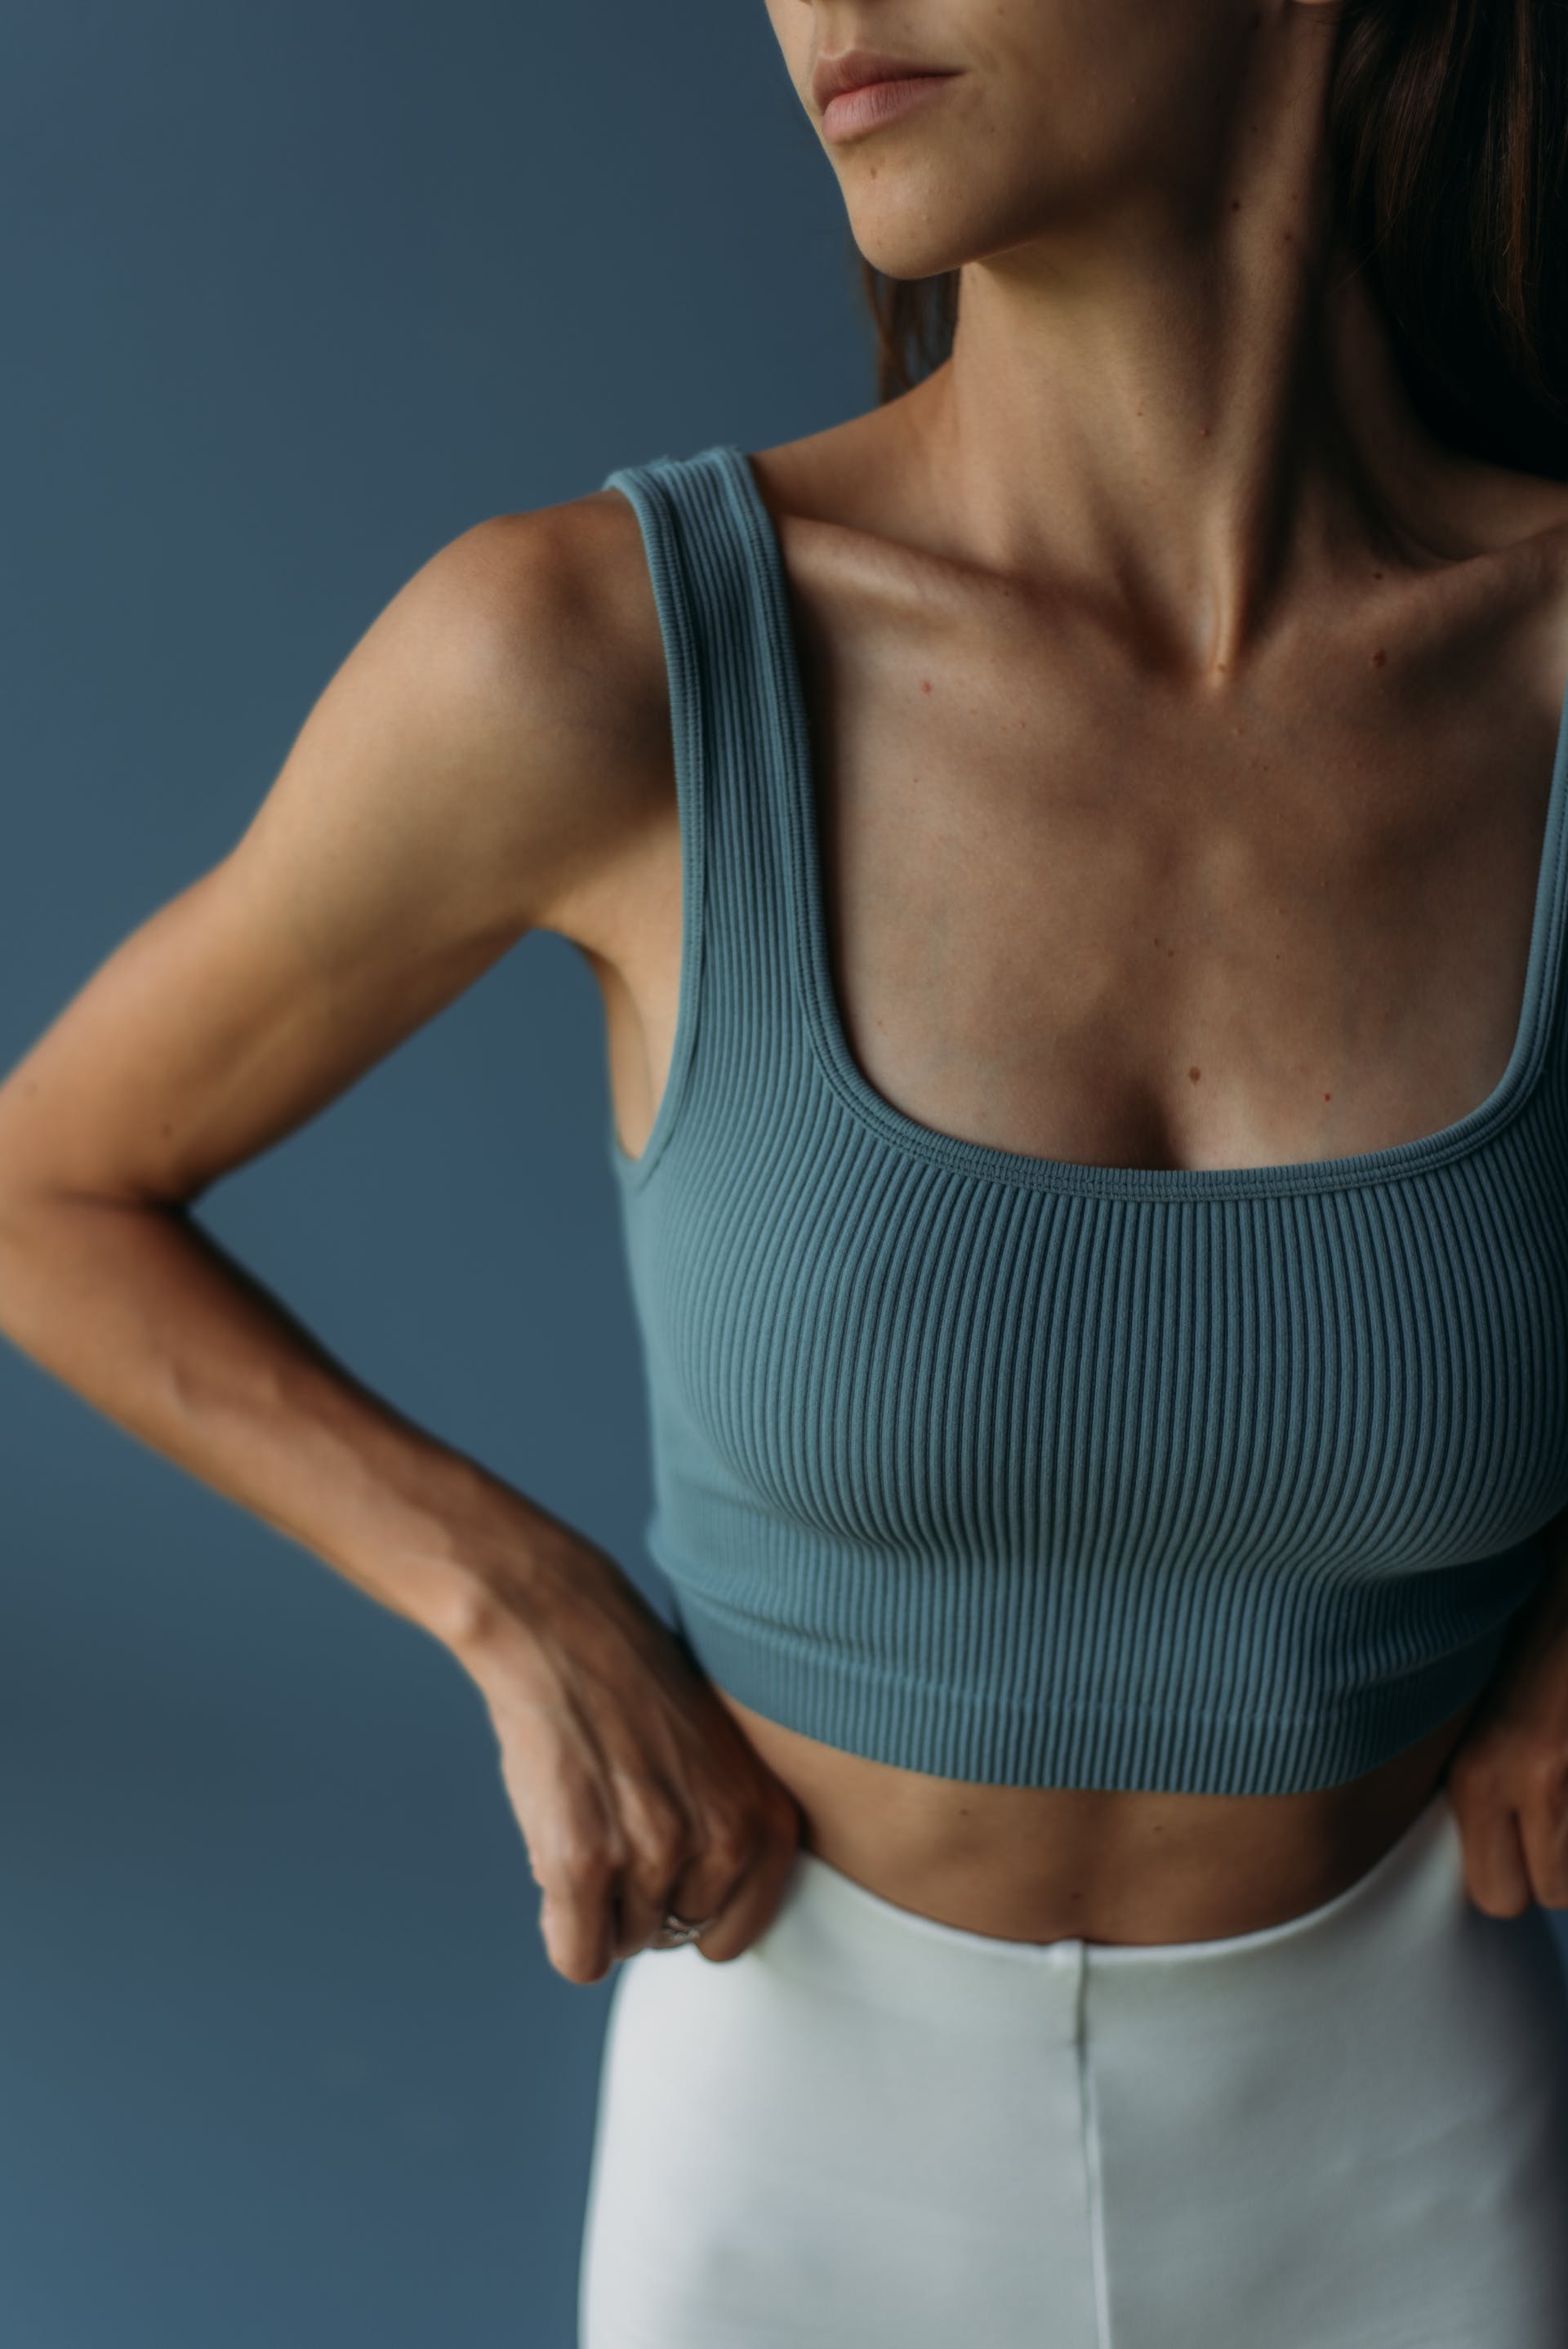 Frau mit flachem Bauch | Quelle: Pexels